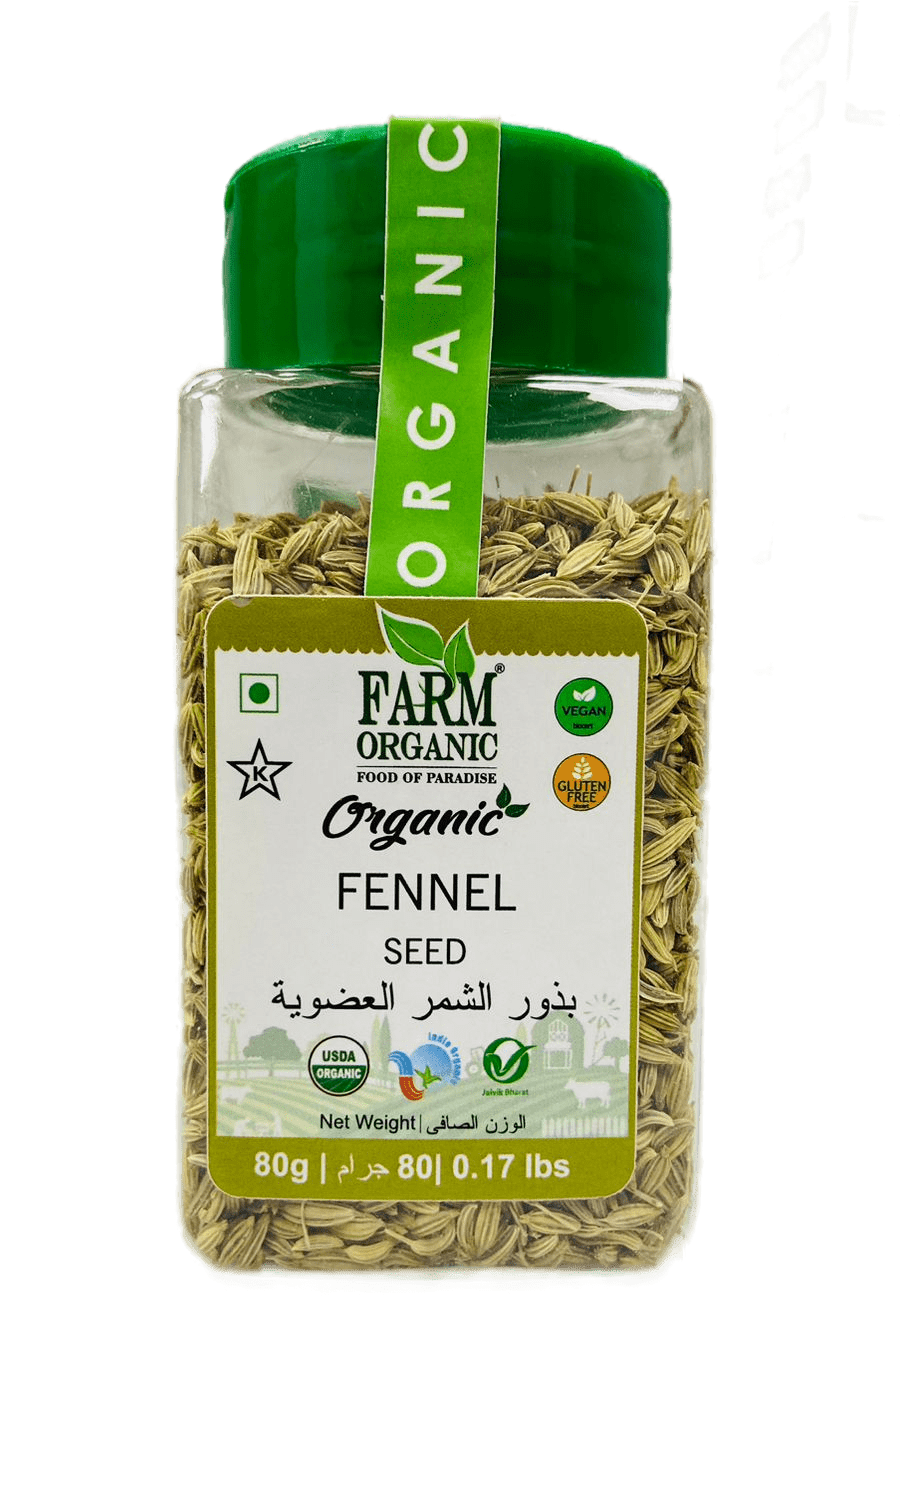 Farm Organic Gluten Free Fennel Seeds - 80g seeds Organichub   